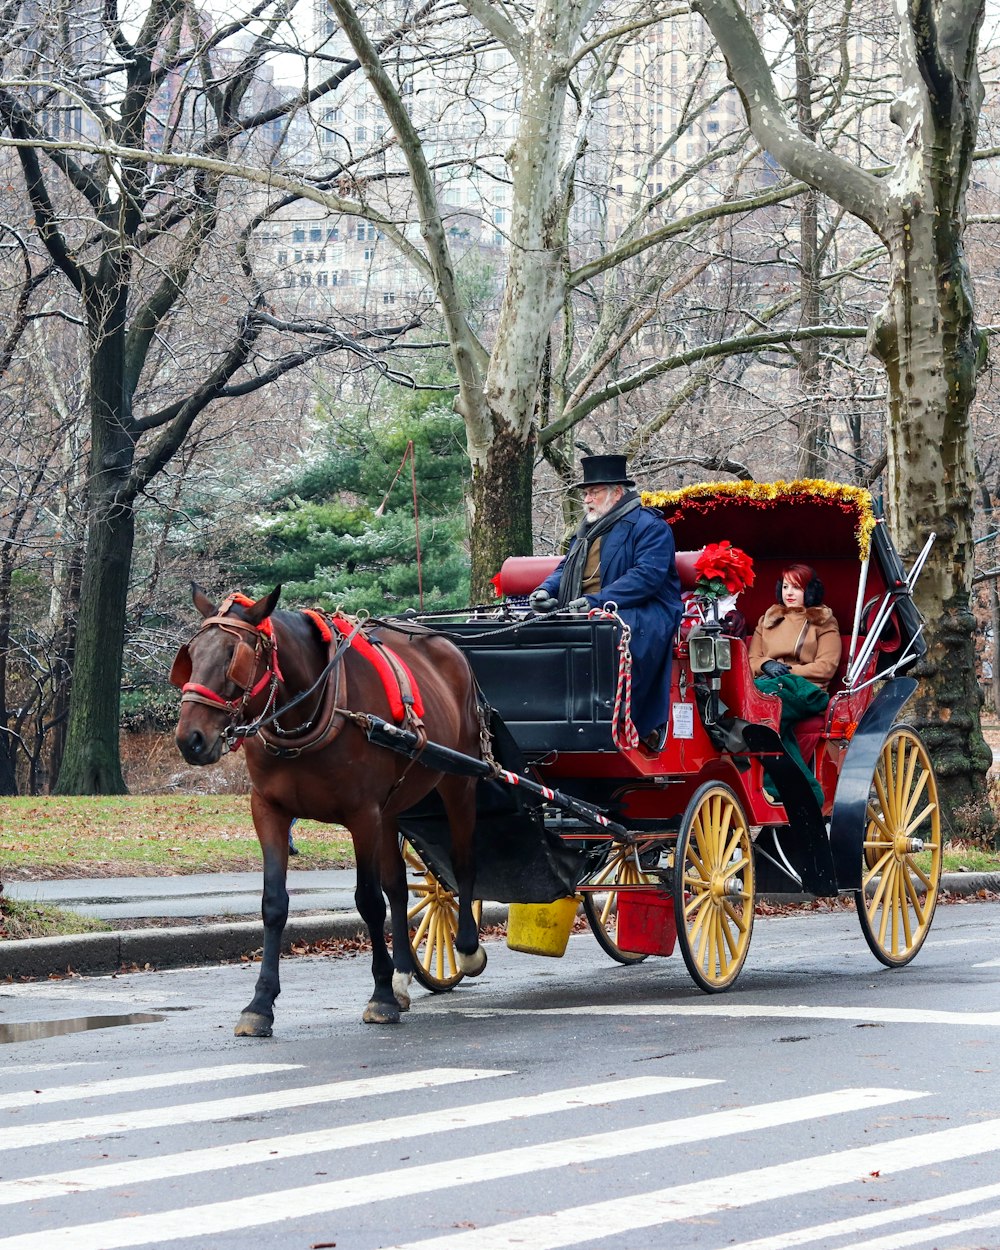 Un carruaje tirado por caballos viajando por una calle